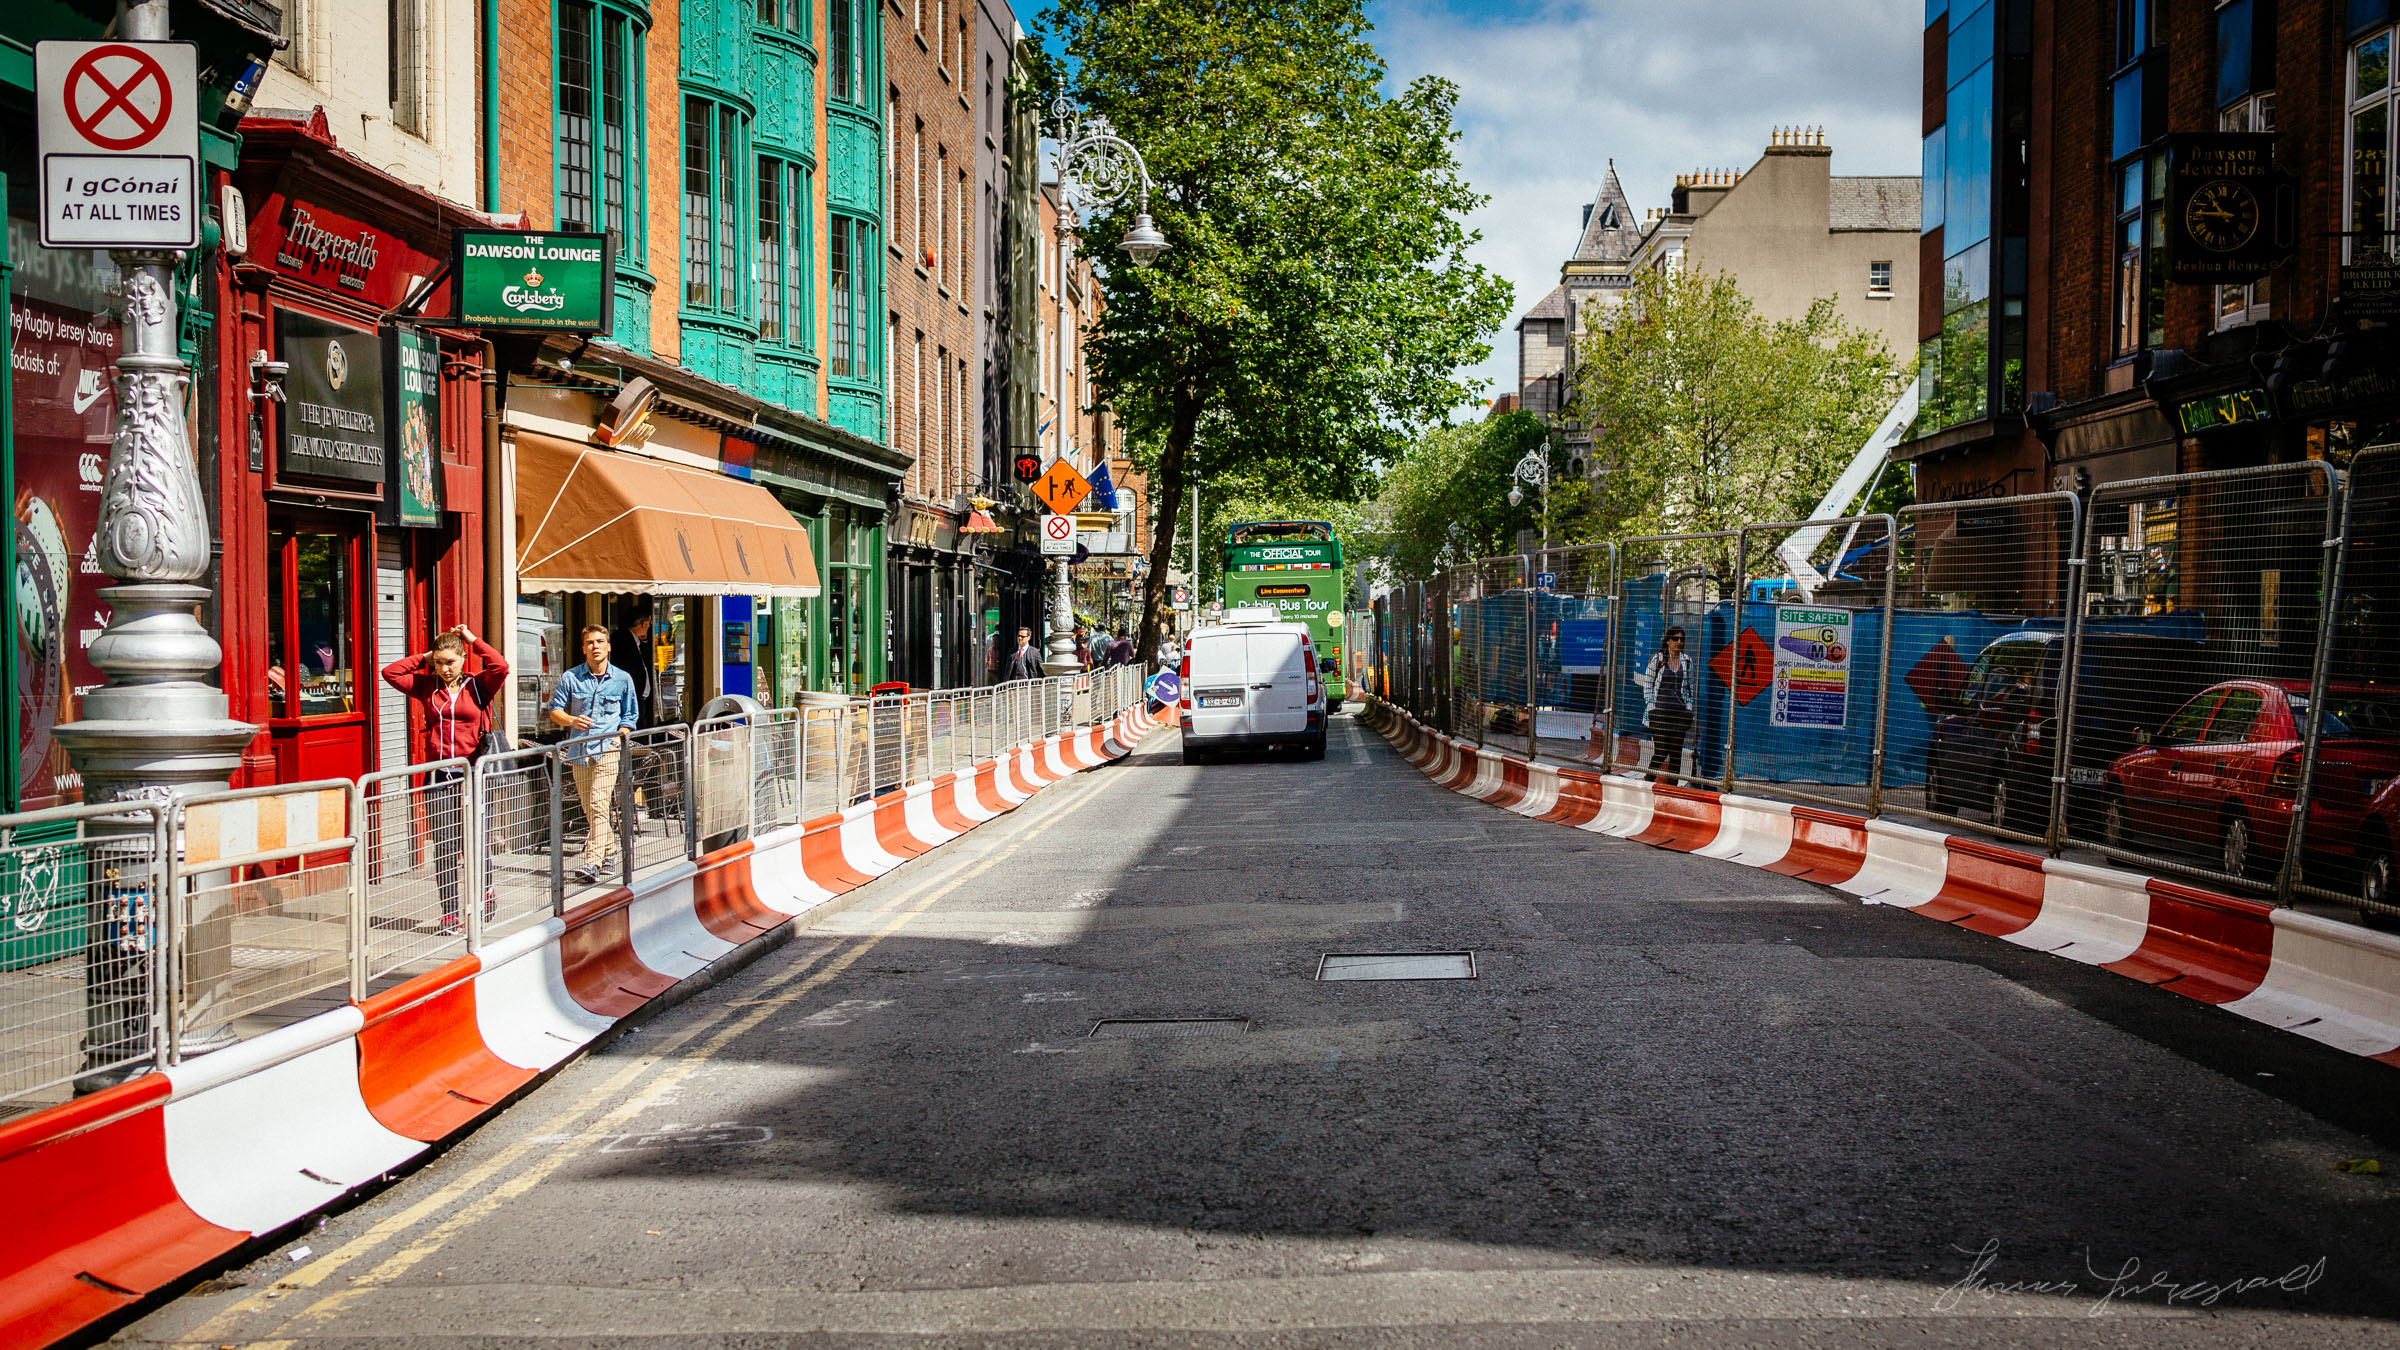 Road Works on Dublin's Dawson Street